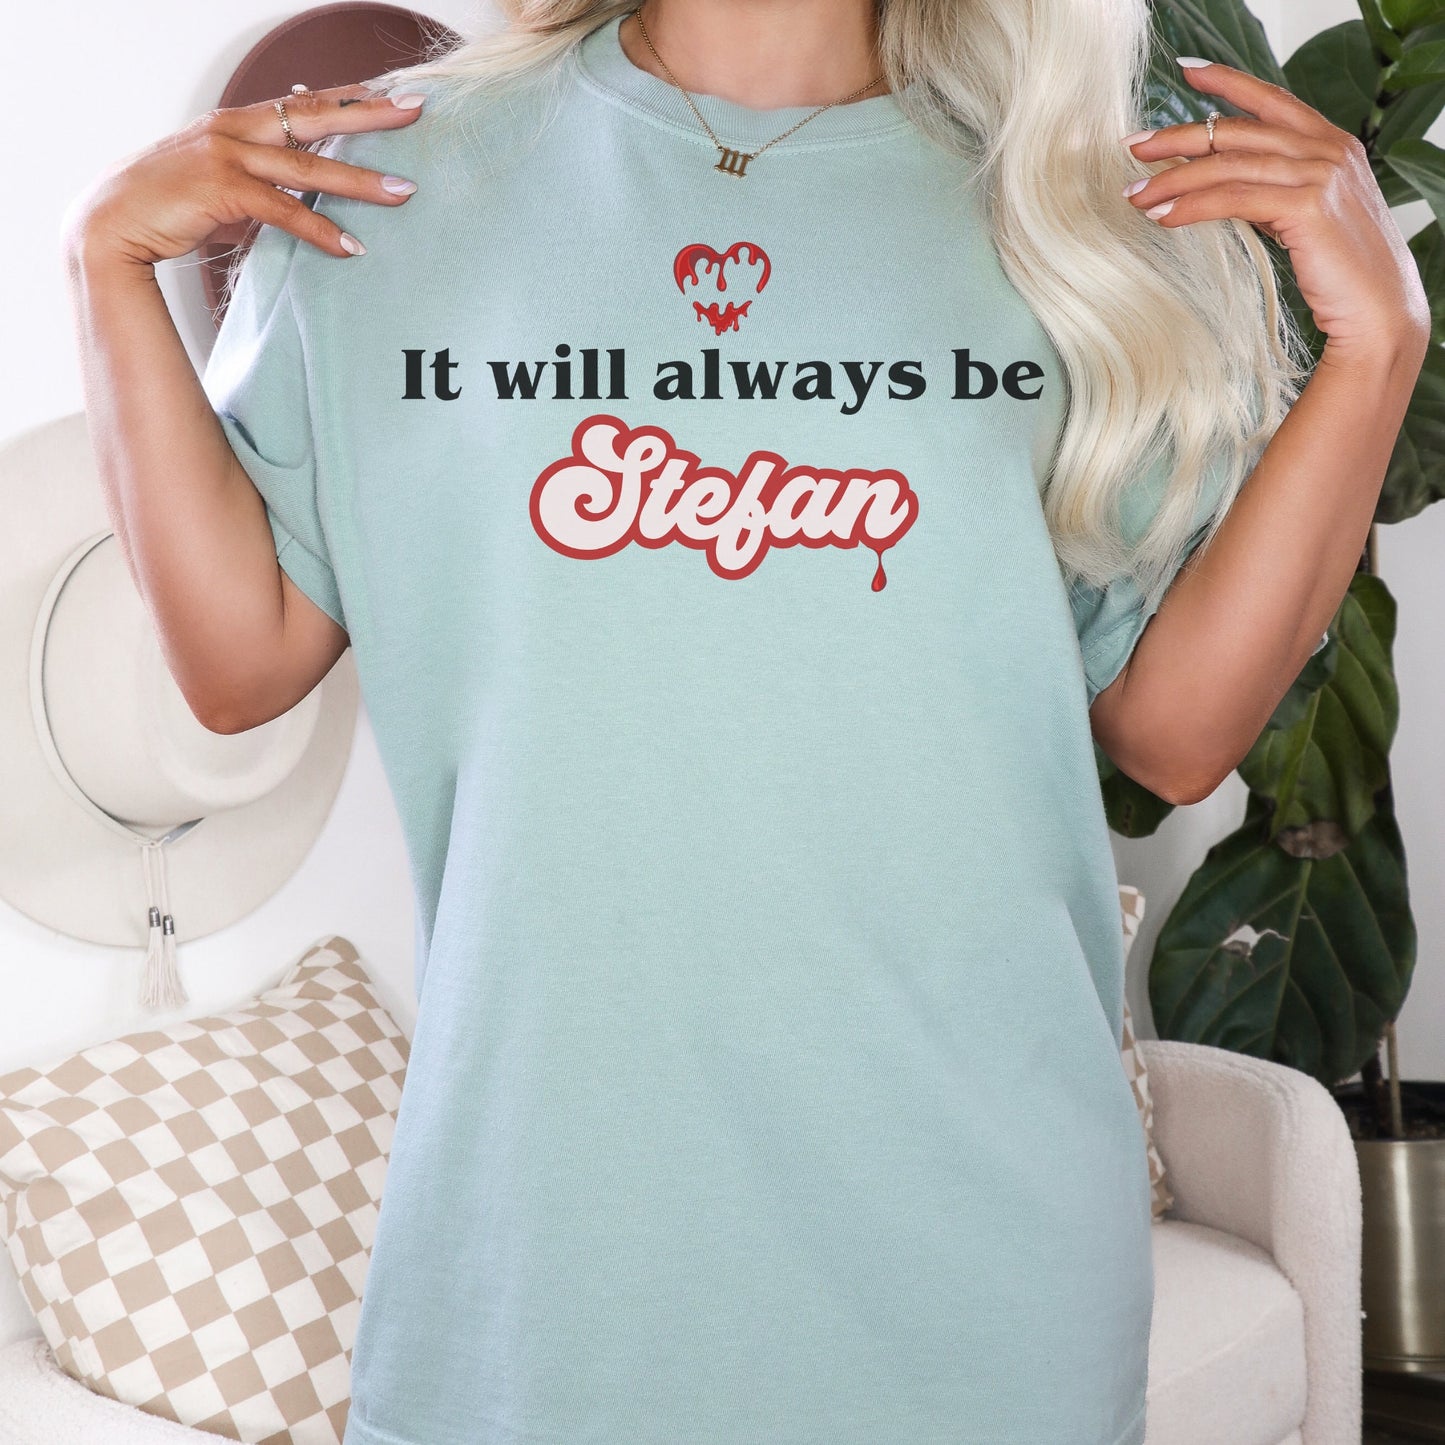 Stefan Salvatore shirt,TVD Shirt, Stefan Salvatore, TVD merch, Tvd fan gift, Mystic Falls shirt, Damon Salvatore, Tvd apparel